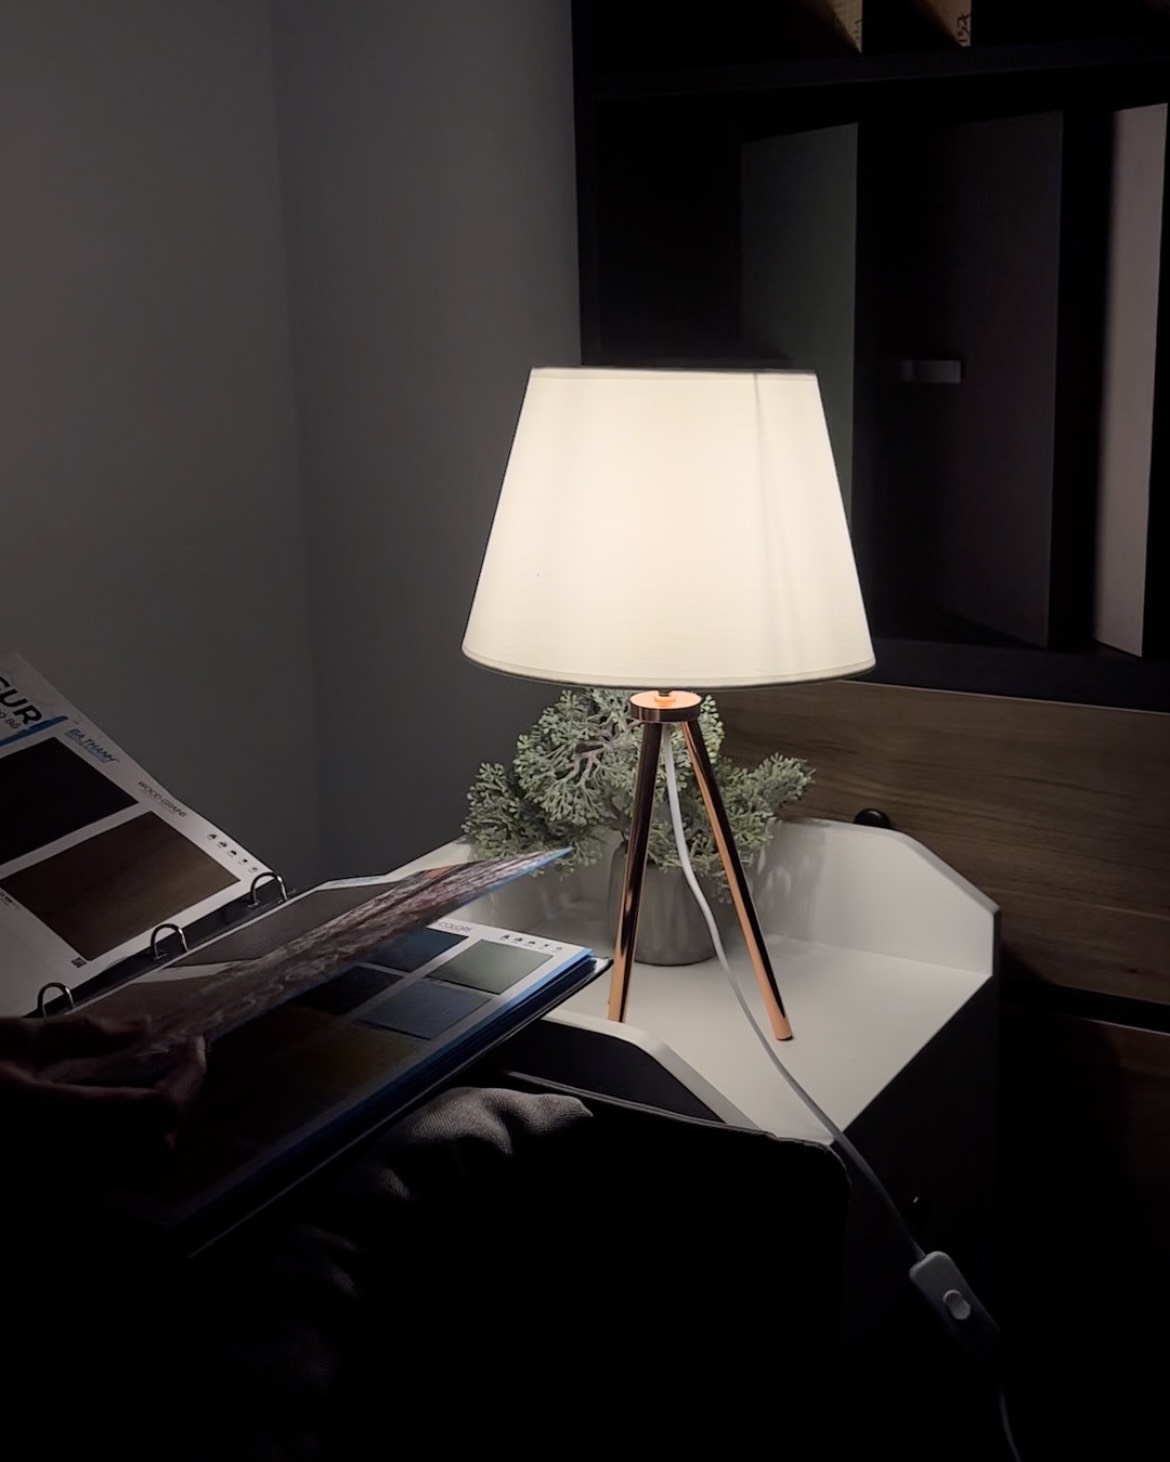 Hình ảnh JIN, Đèn bàn phòng ngủ (Hình ảnh thật), Scandi Home